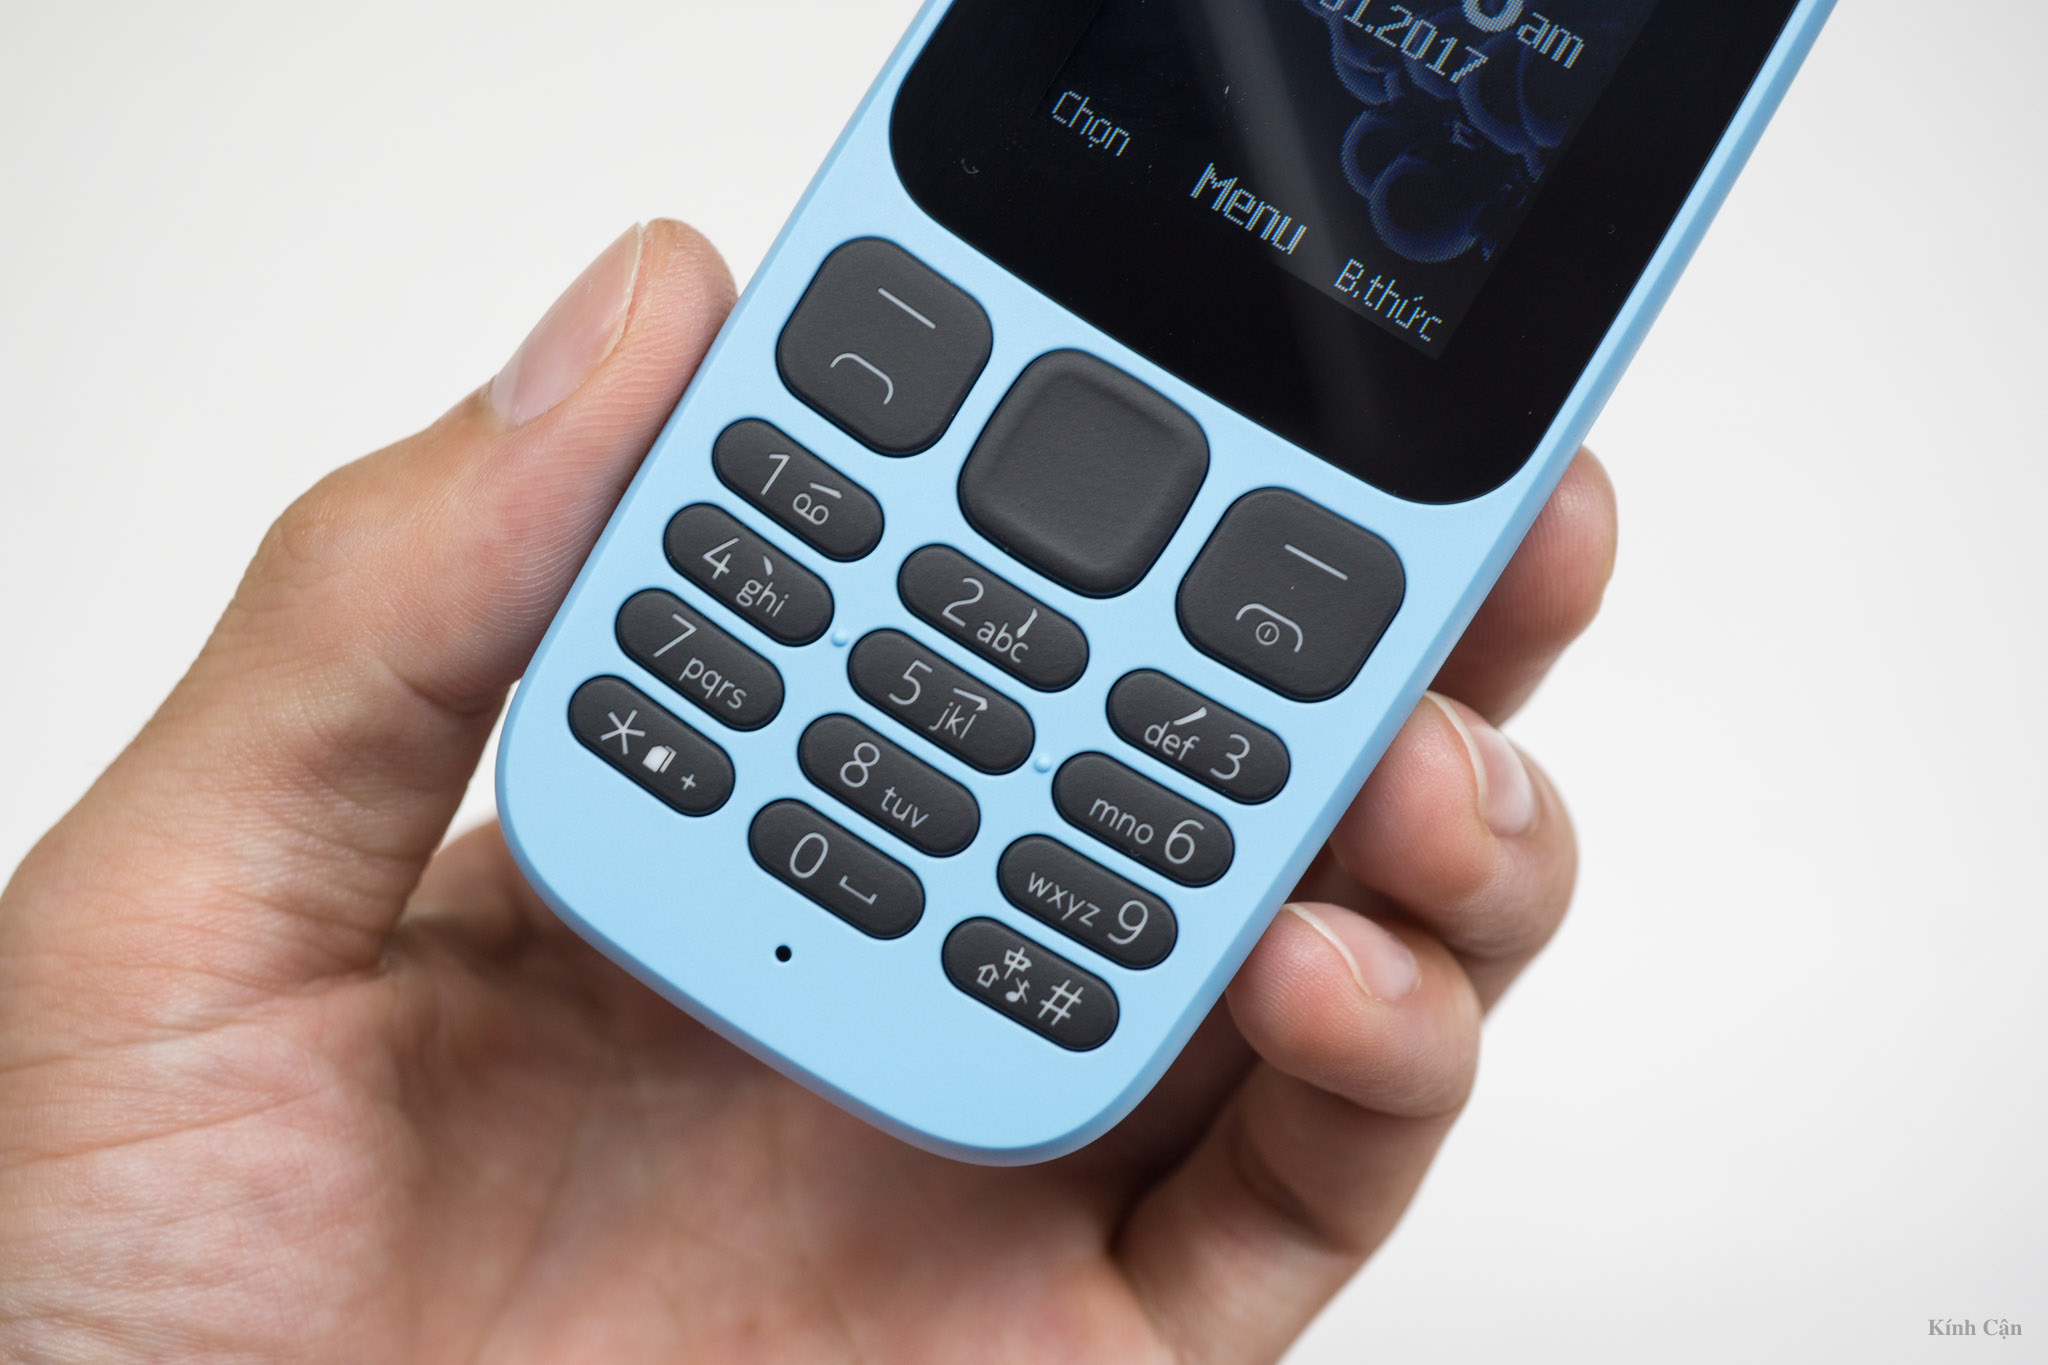 Nokia 105 Dual SIM 2017-22.jpg